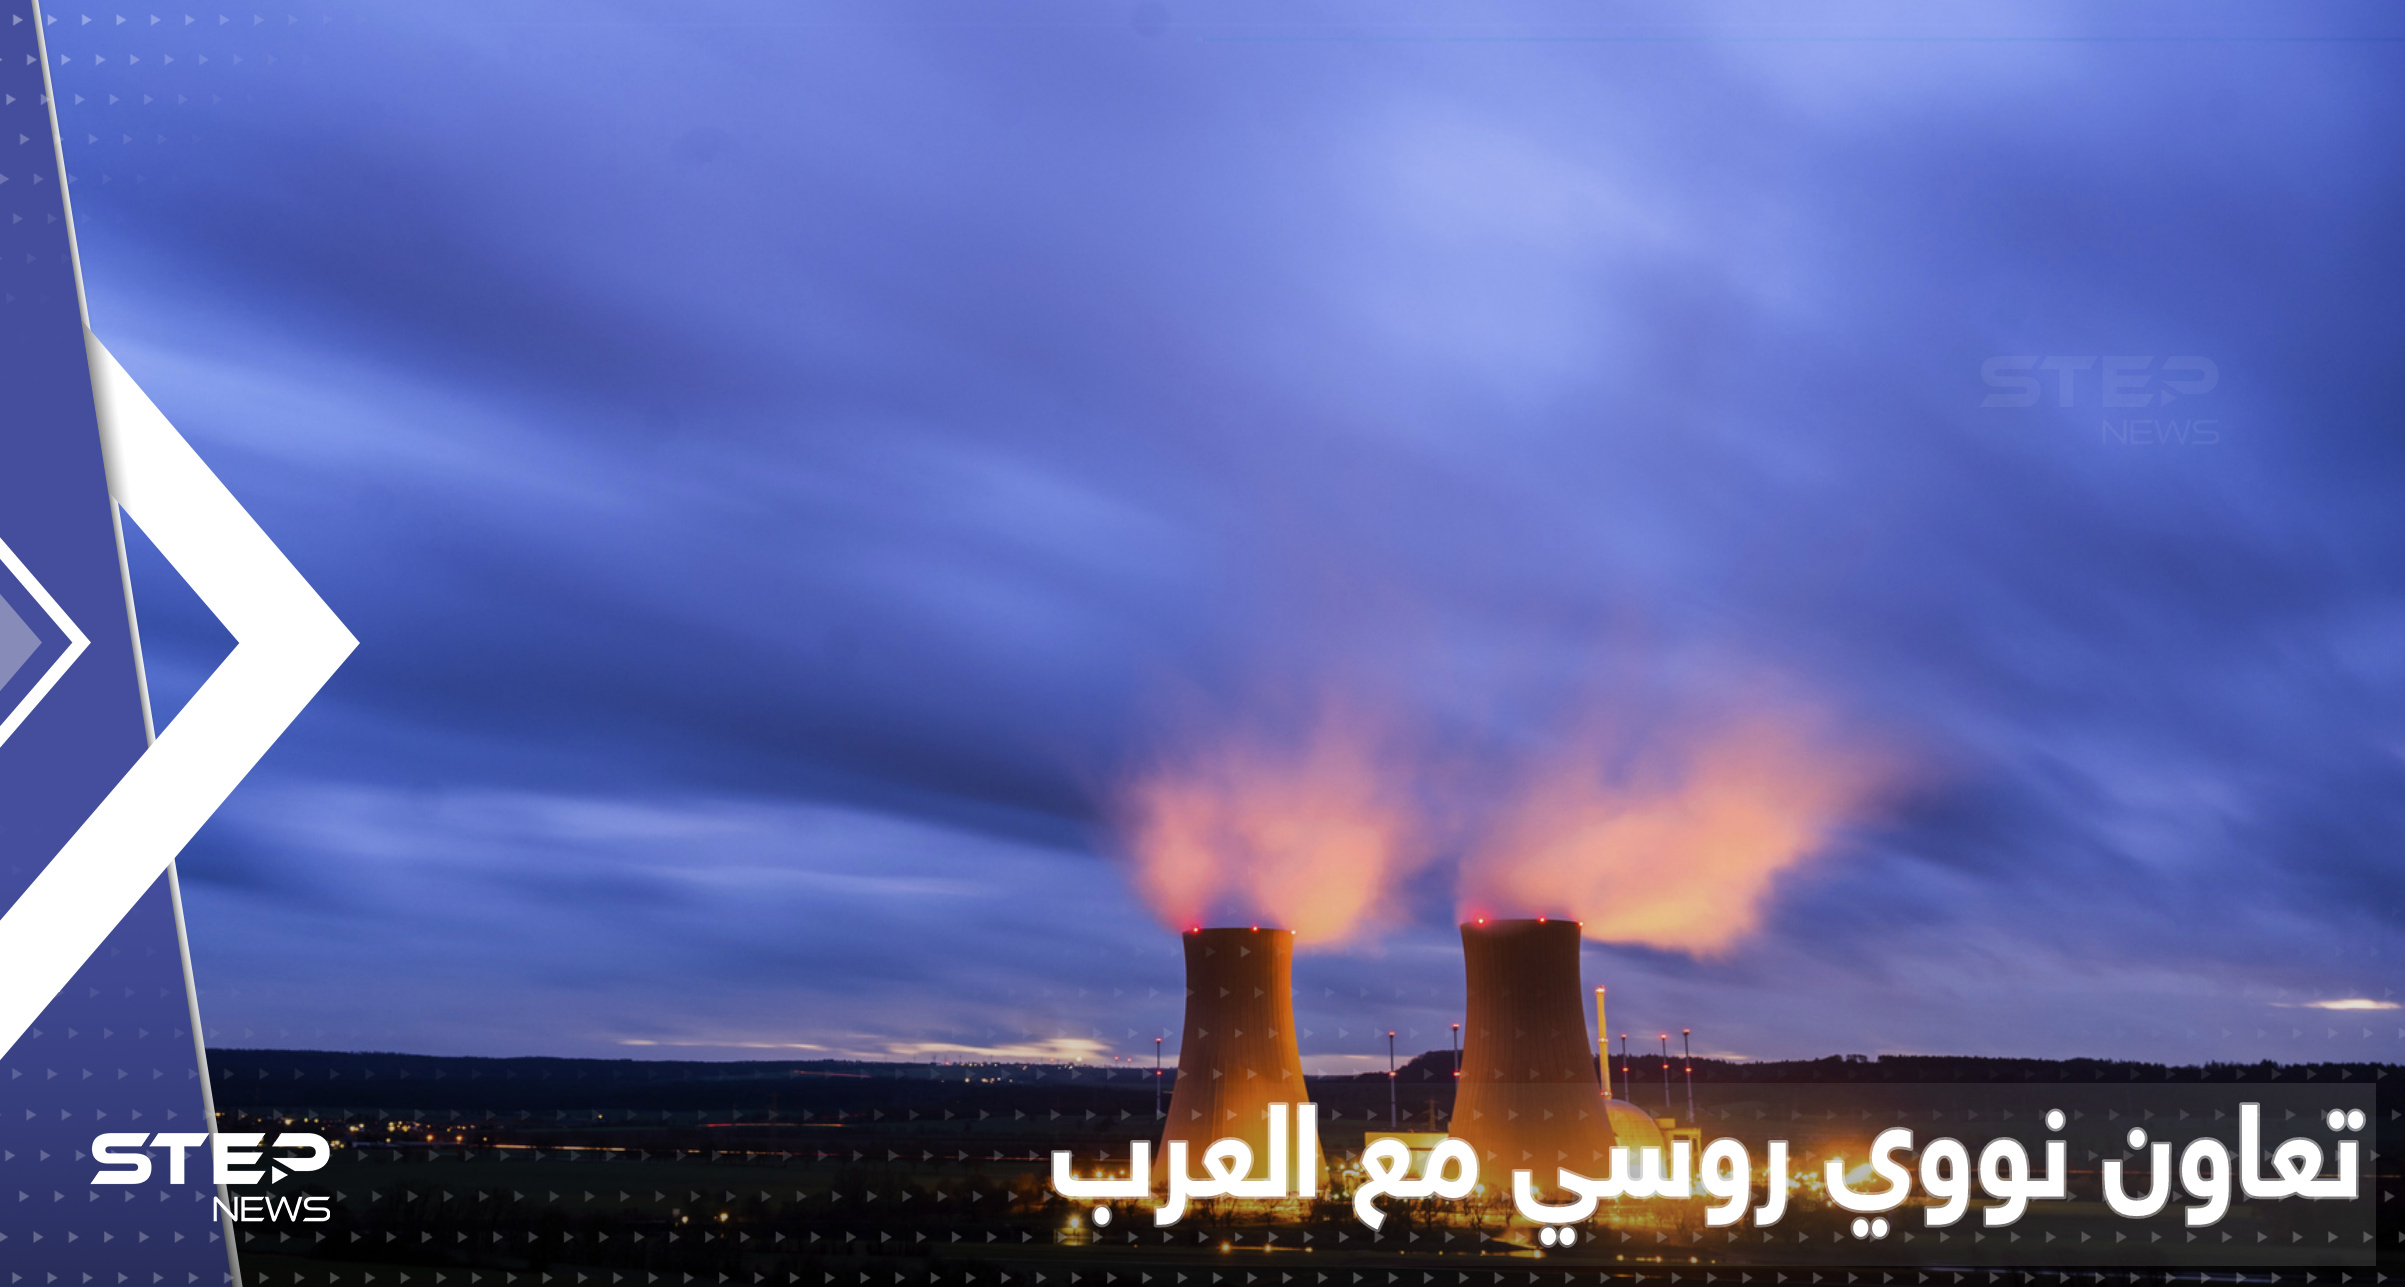 روسيا تعلن عن تعاون بمجال الطاقة النووية مع دولة عربية ثانية بأقل من شهر 